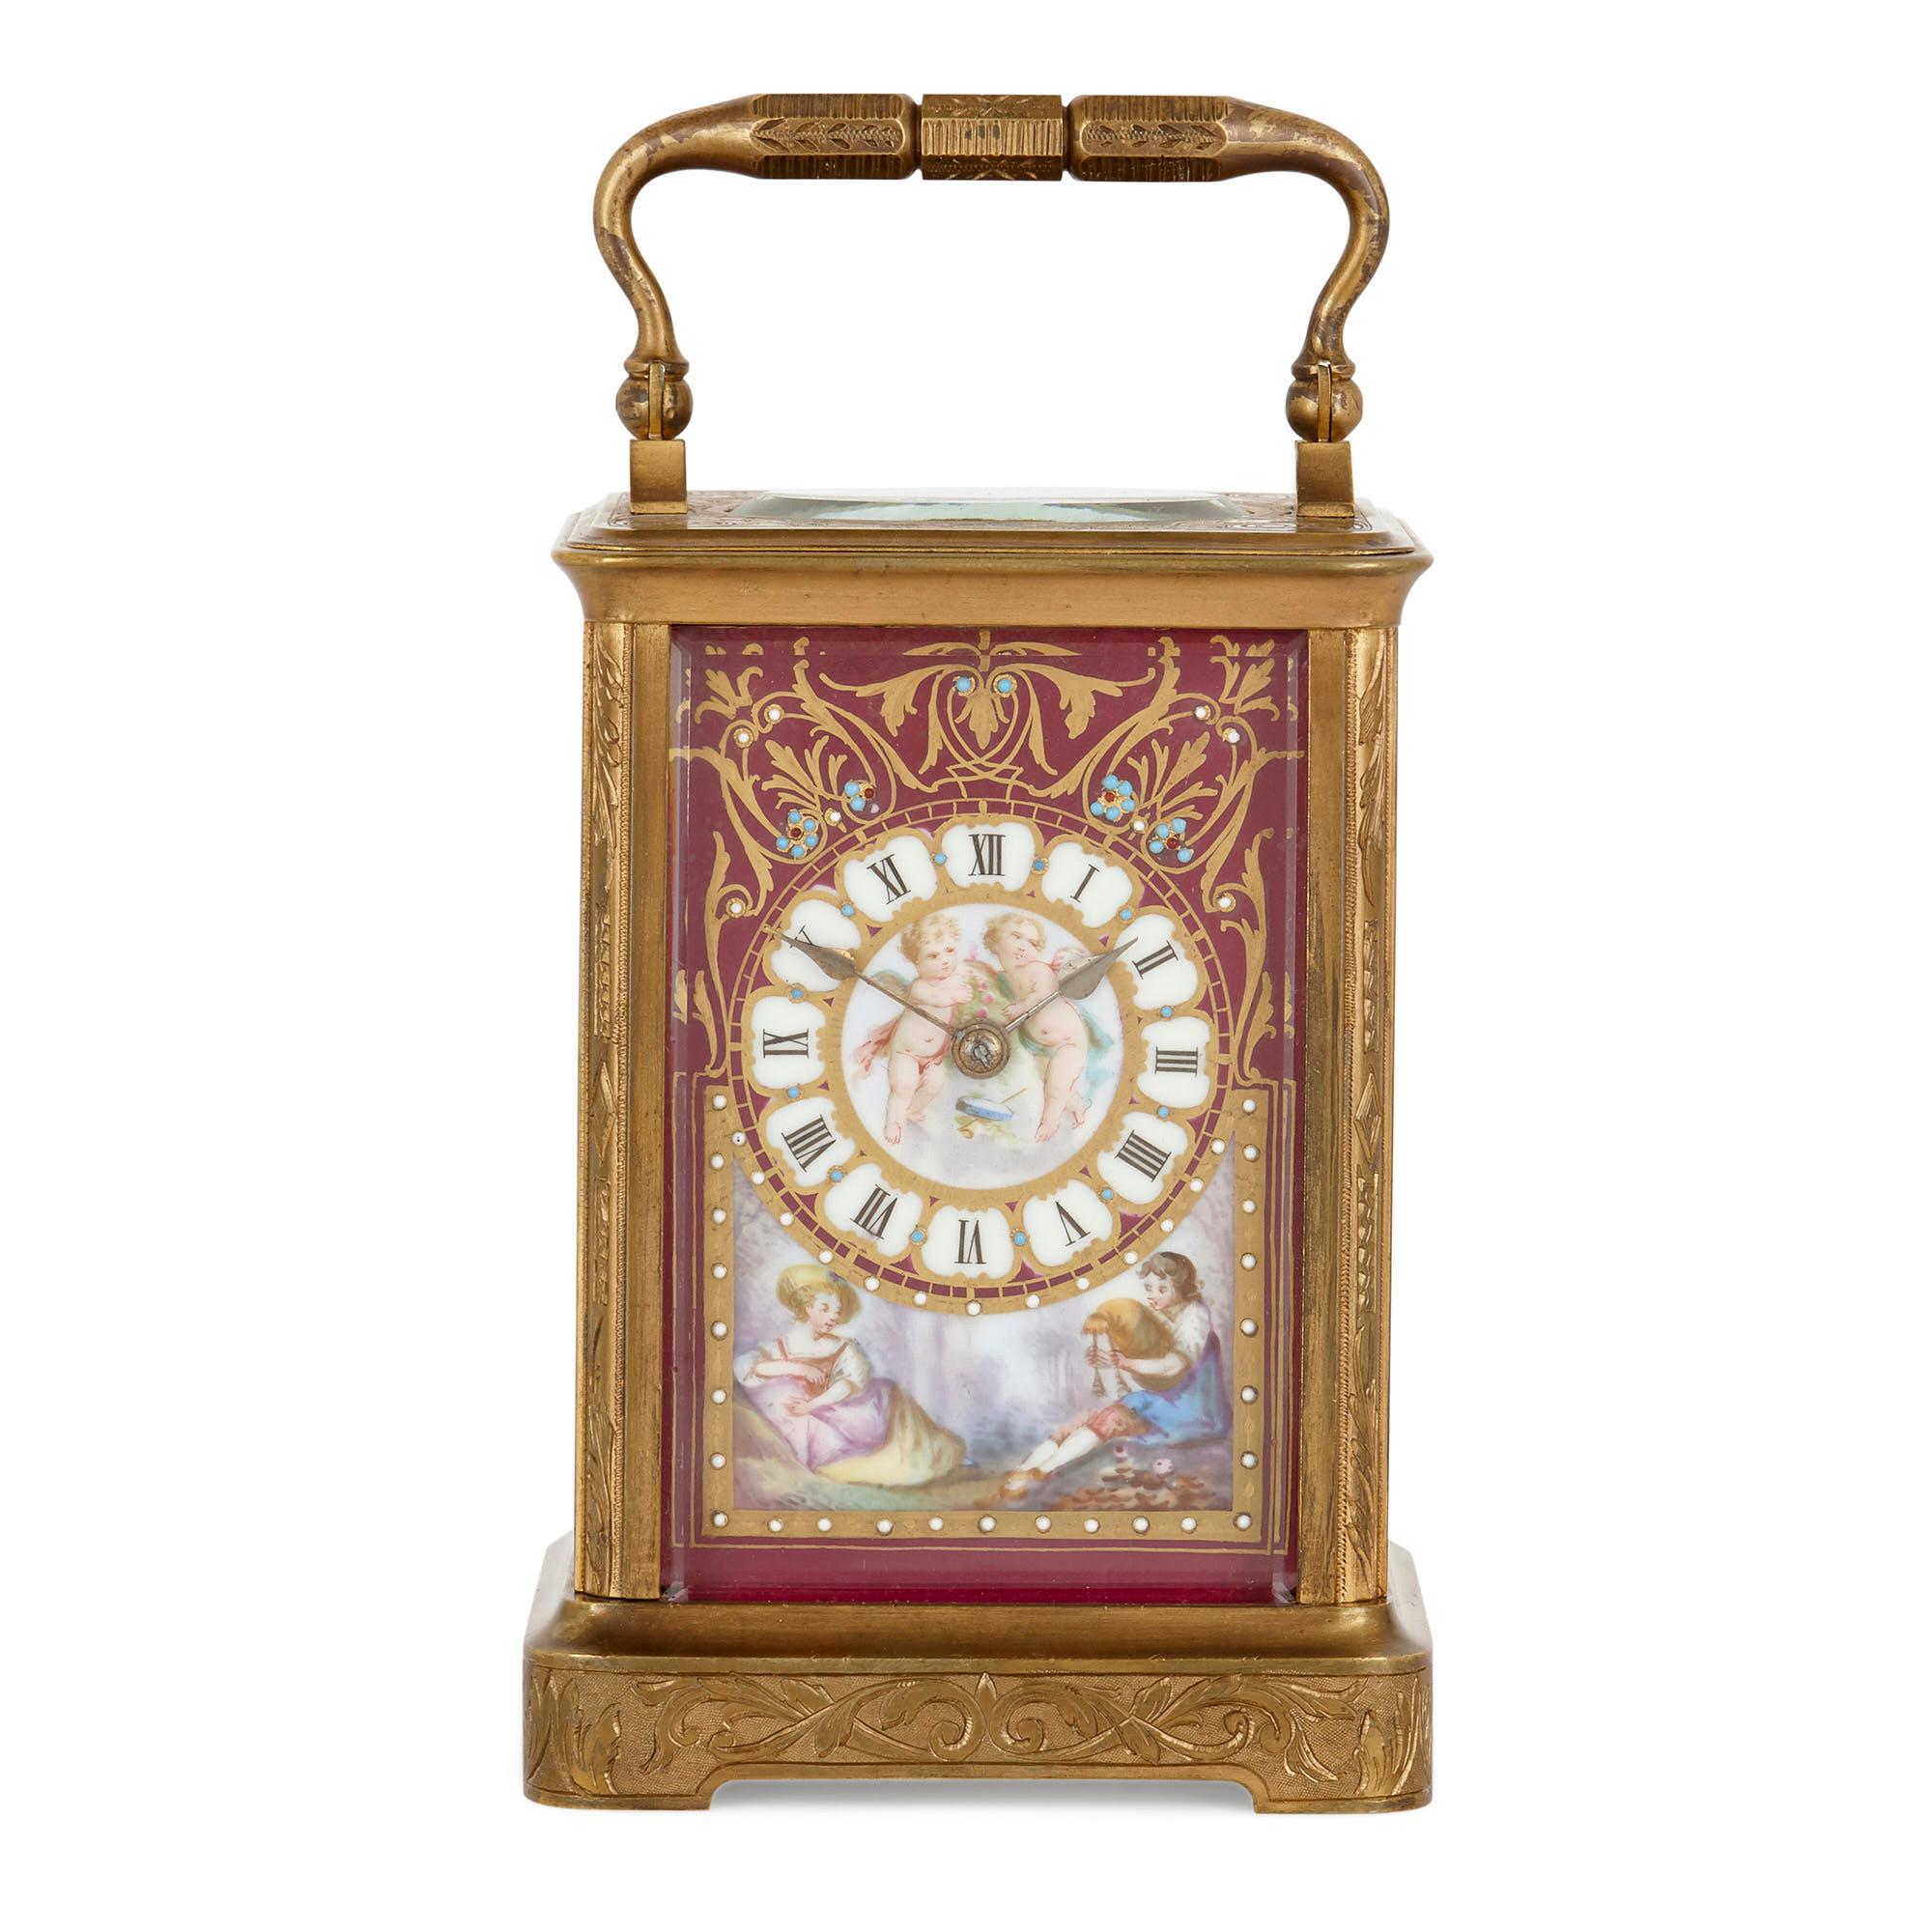 Cette belle horloge a été fabriquée vers 1870 en France. Connue sous le nom d'horloge de voiture, elle était conçue pour être utilisée lors des déplacements. Ces horloges étaient fabriquées à petite échelle, avec des poignées, afin de pouvoir être